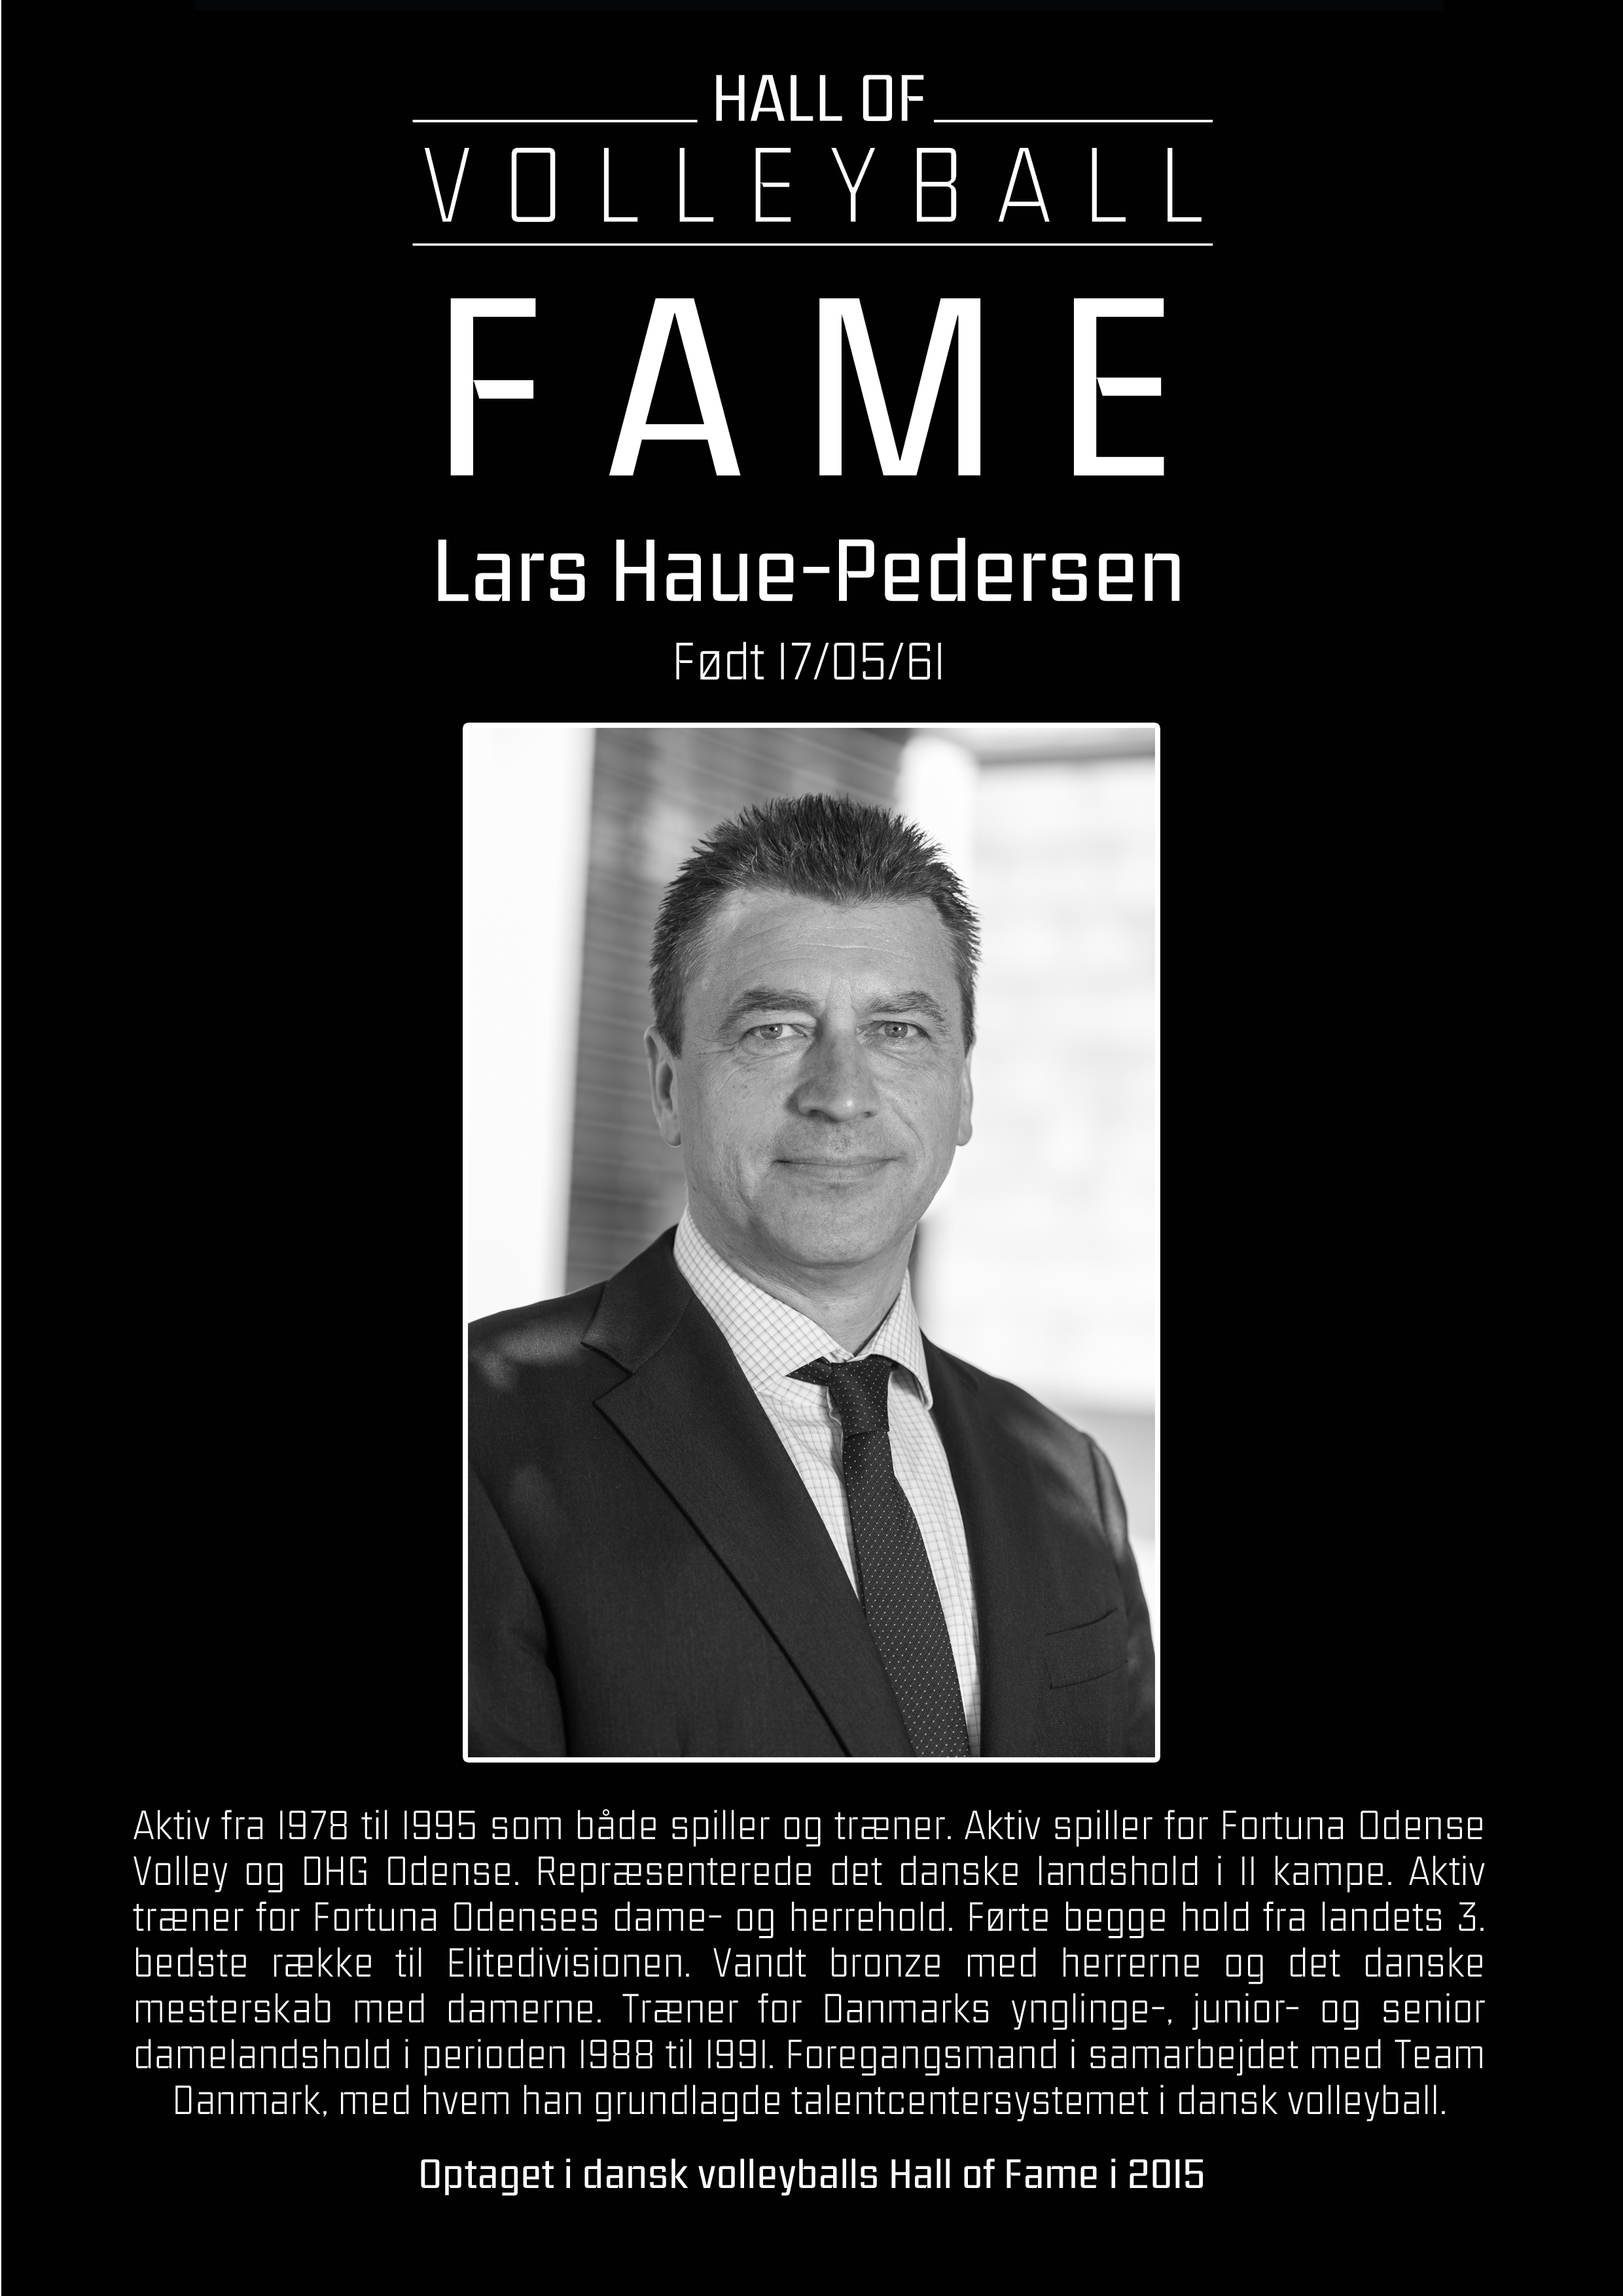 Lars Haue-Pedersen